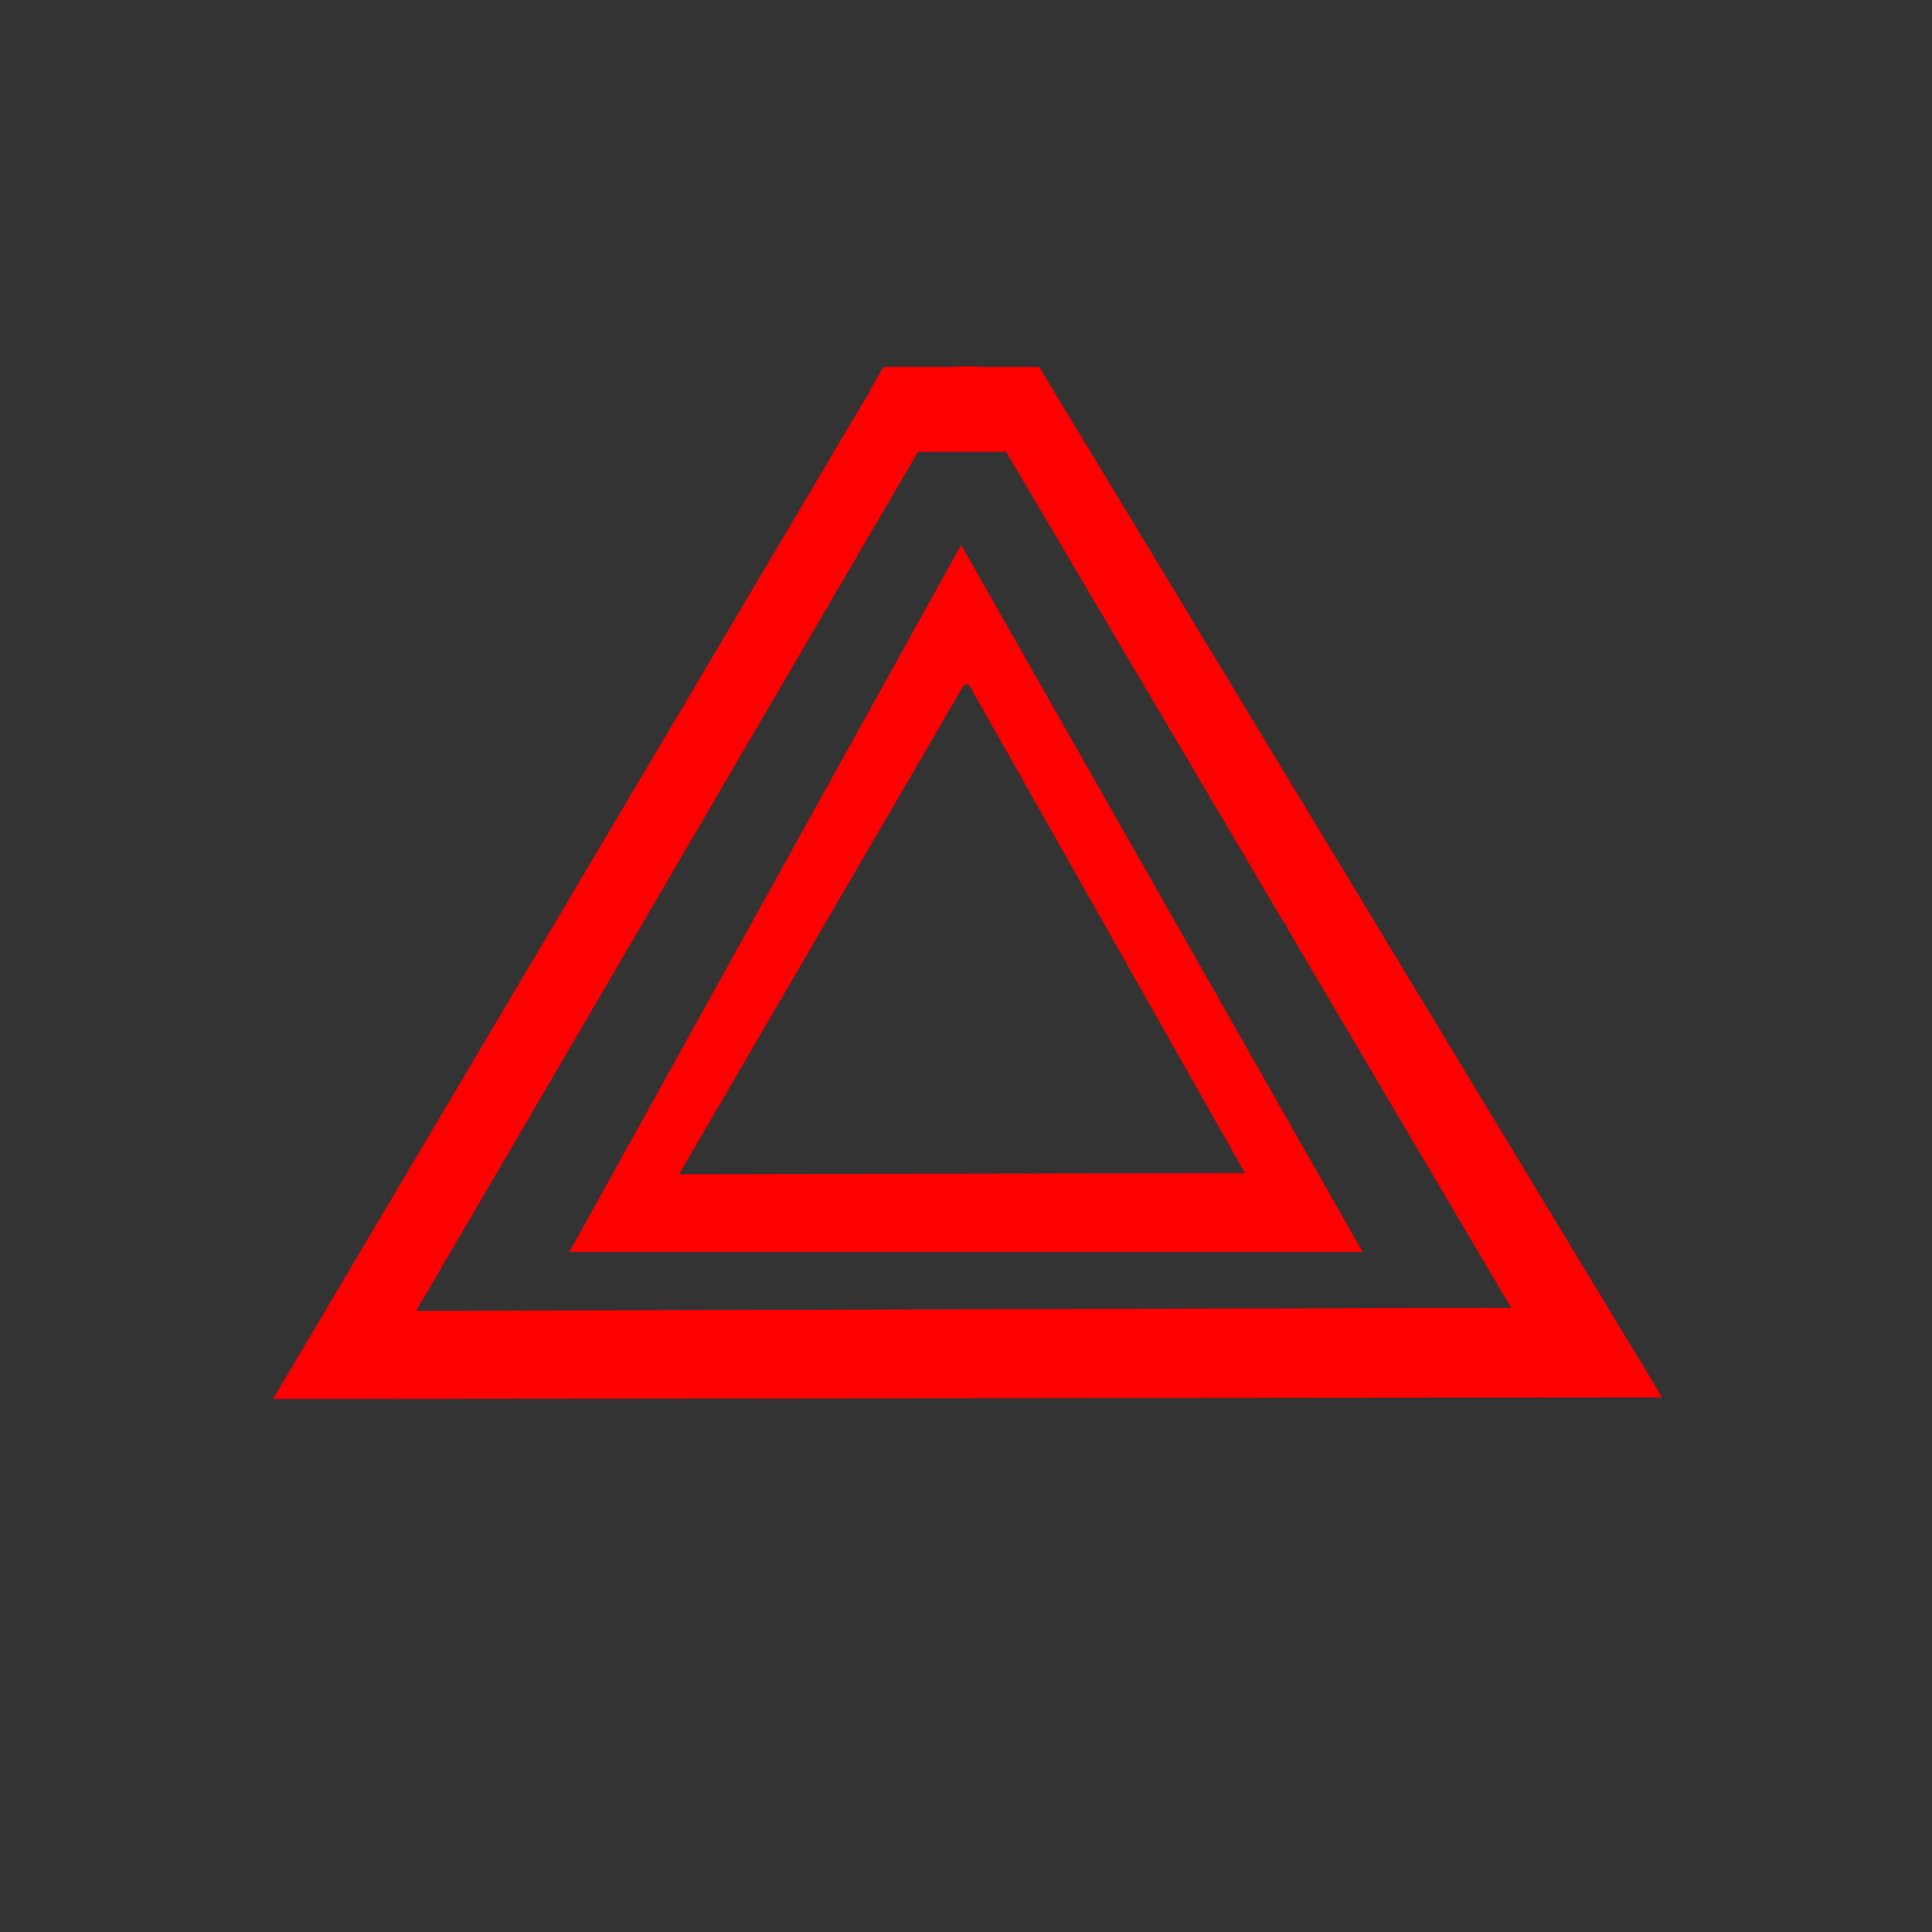 két piros háromszög egymásban világít a műszerfalon